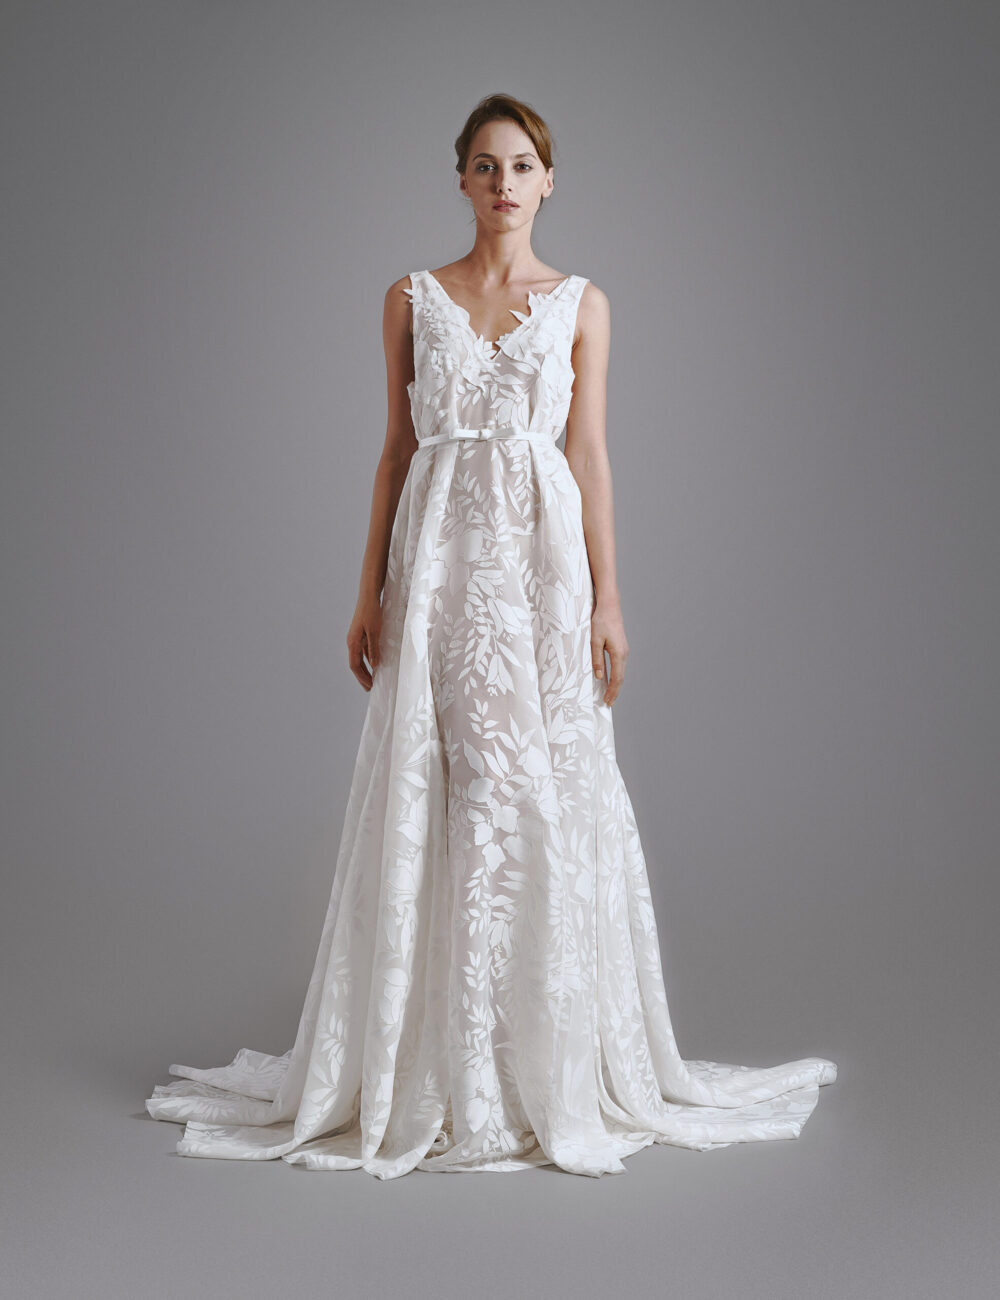 SILVER DOLLAR Bridal Gown - Wedding Dress - BHARB Bridal